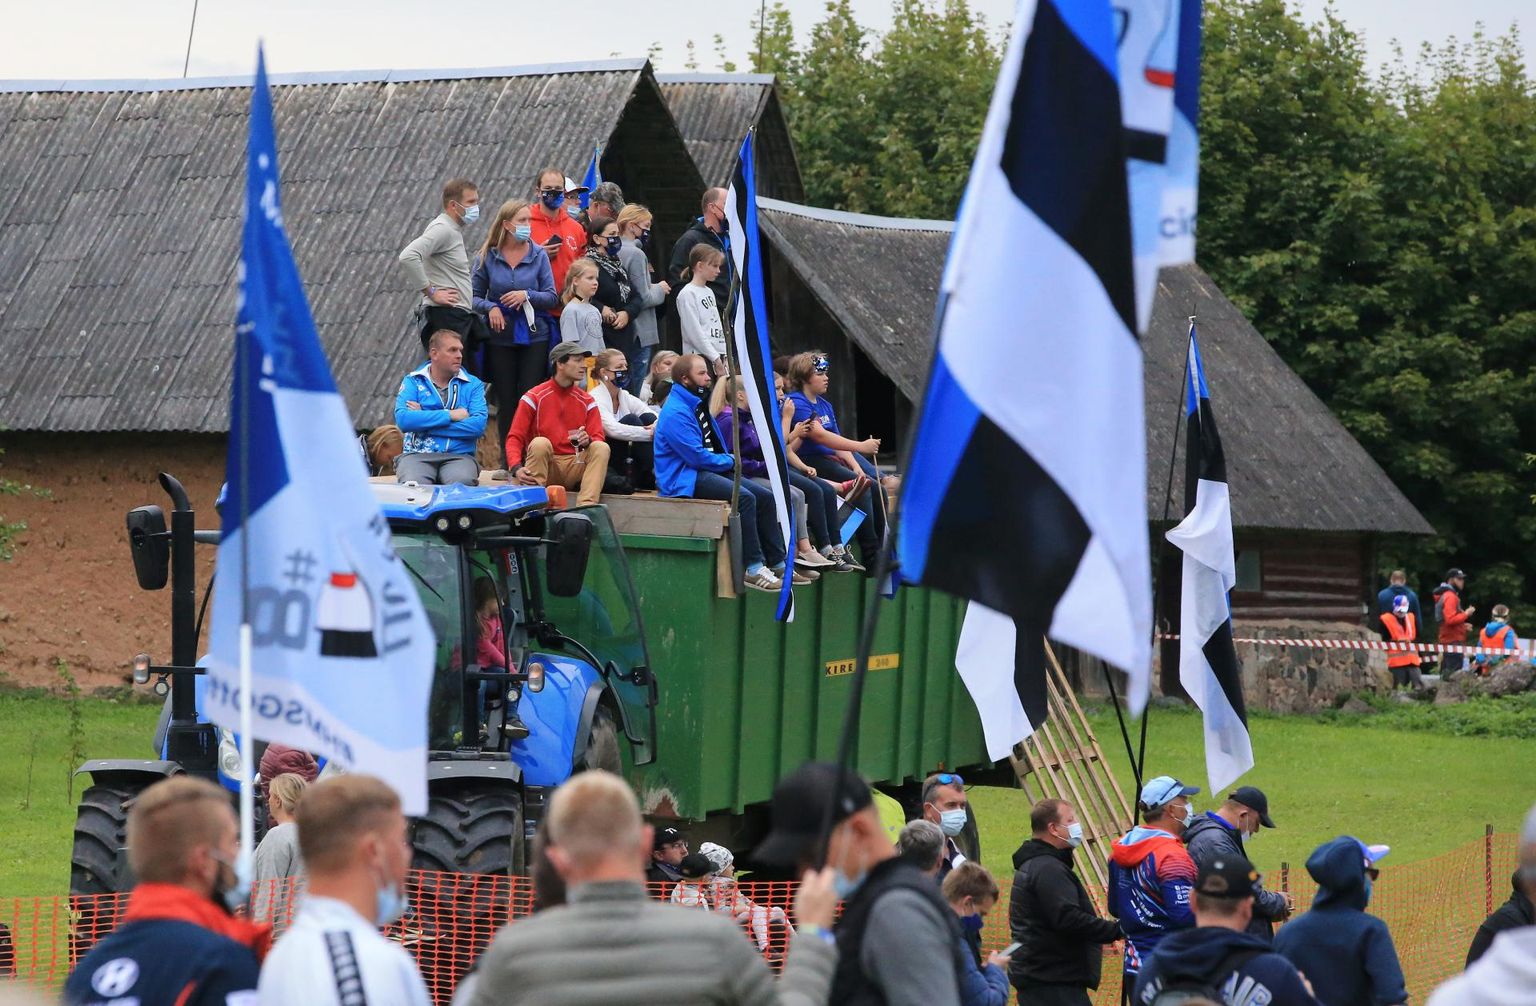 Rally Estonia oli esimene spordivõistlus, kus publik pidi omaks võtma maski kandmise kohustuse. Edaspidi peavad pealtvaatajad maski kandma kõigil ruumides peetavatel spordiüritustel. Margus Ansu